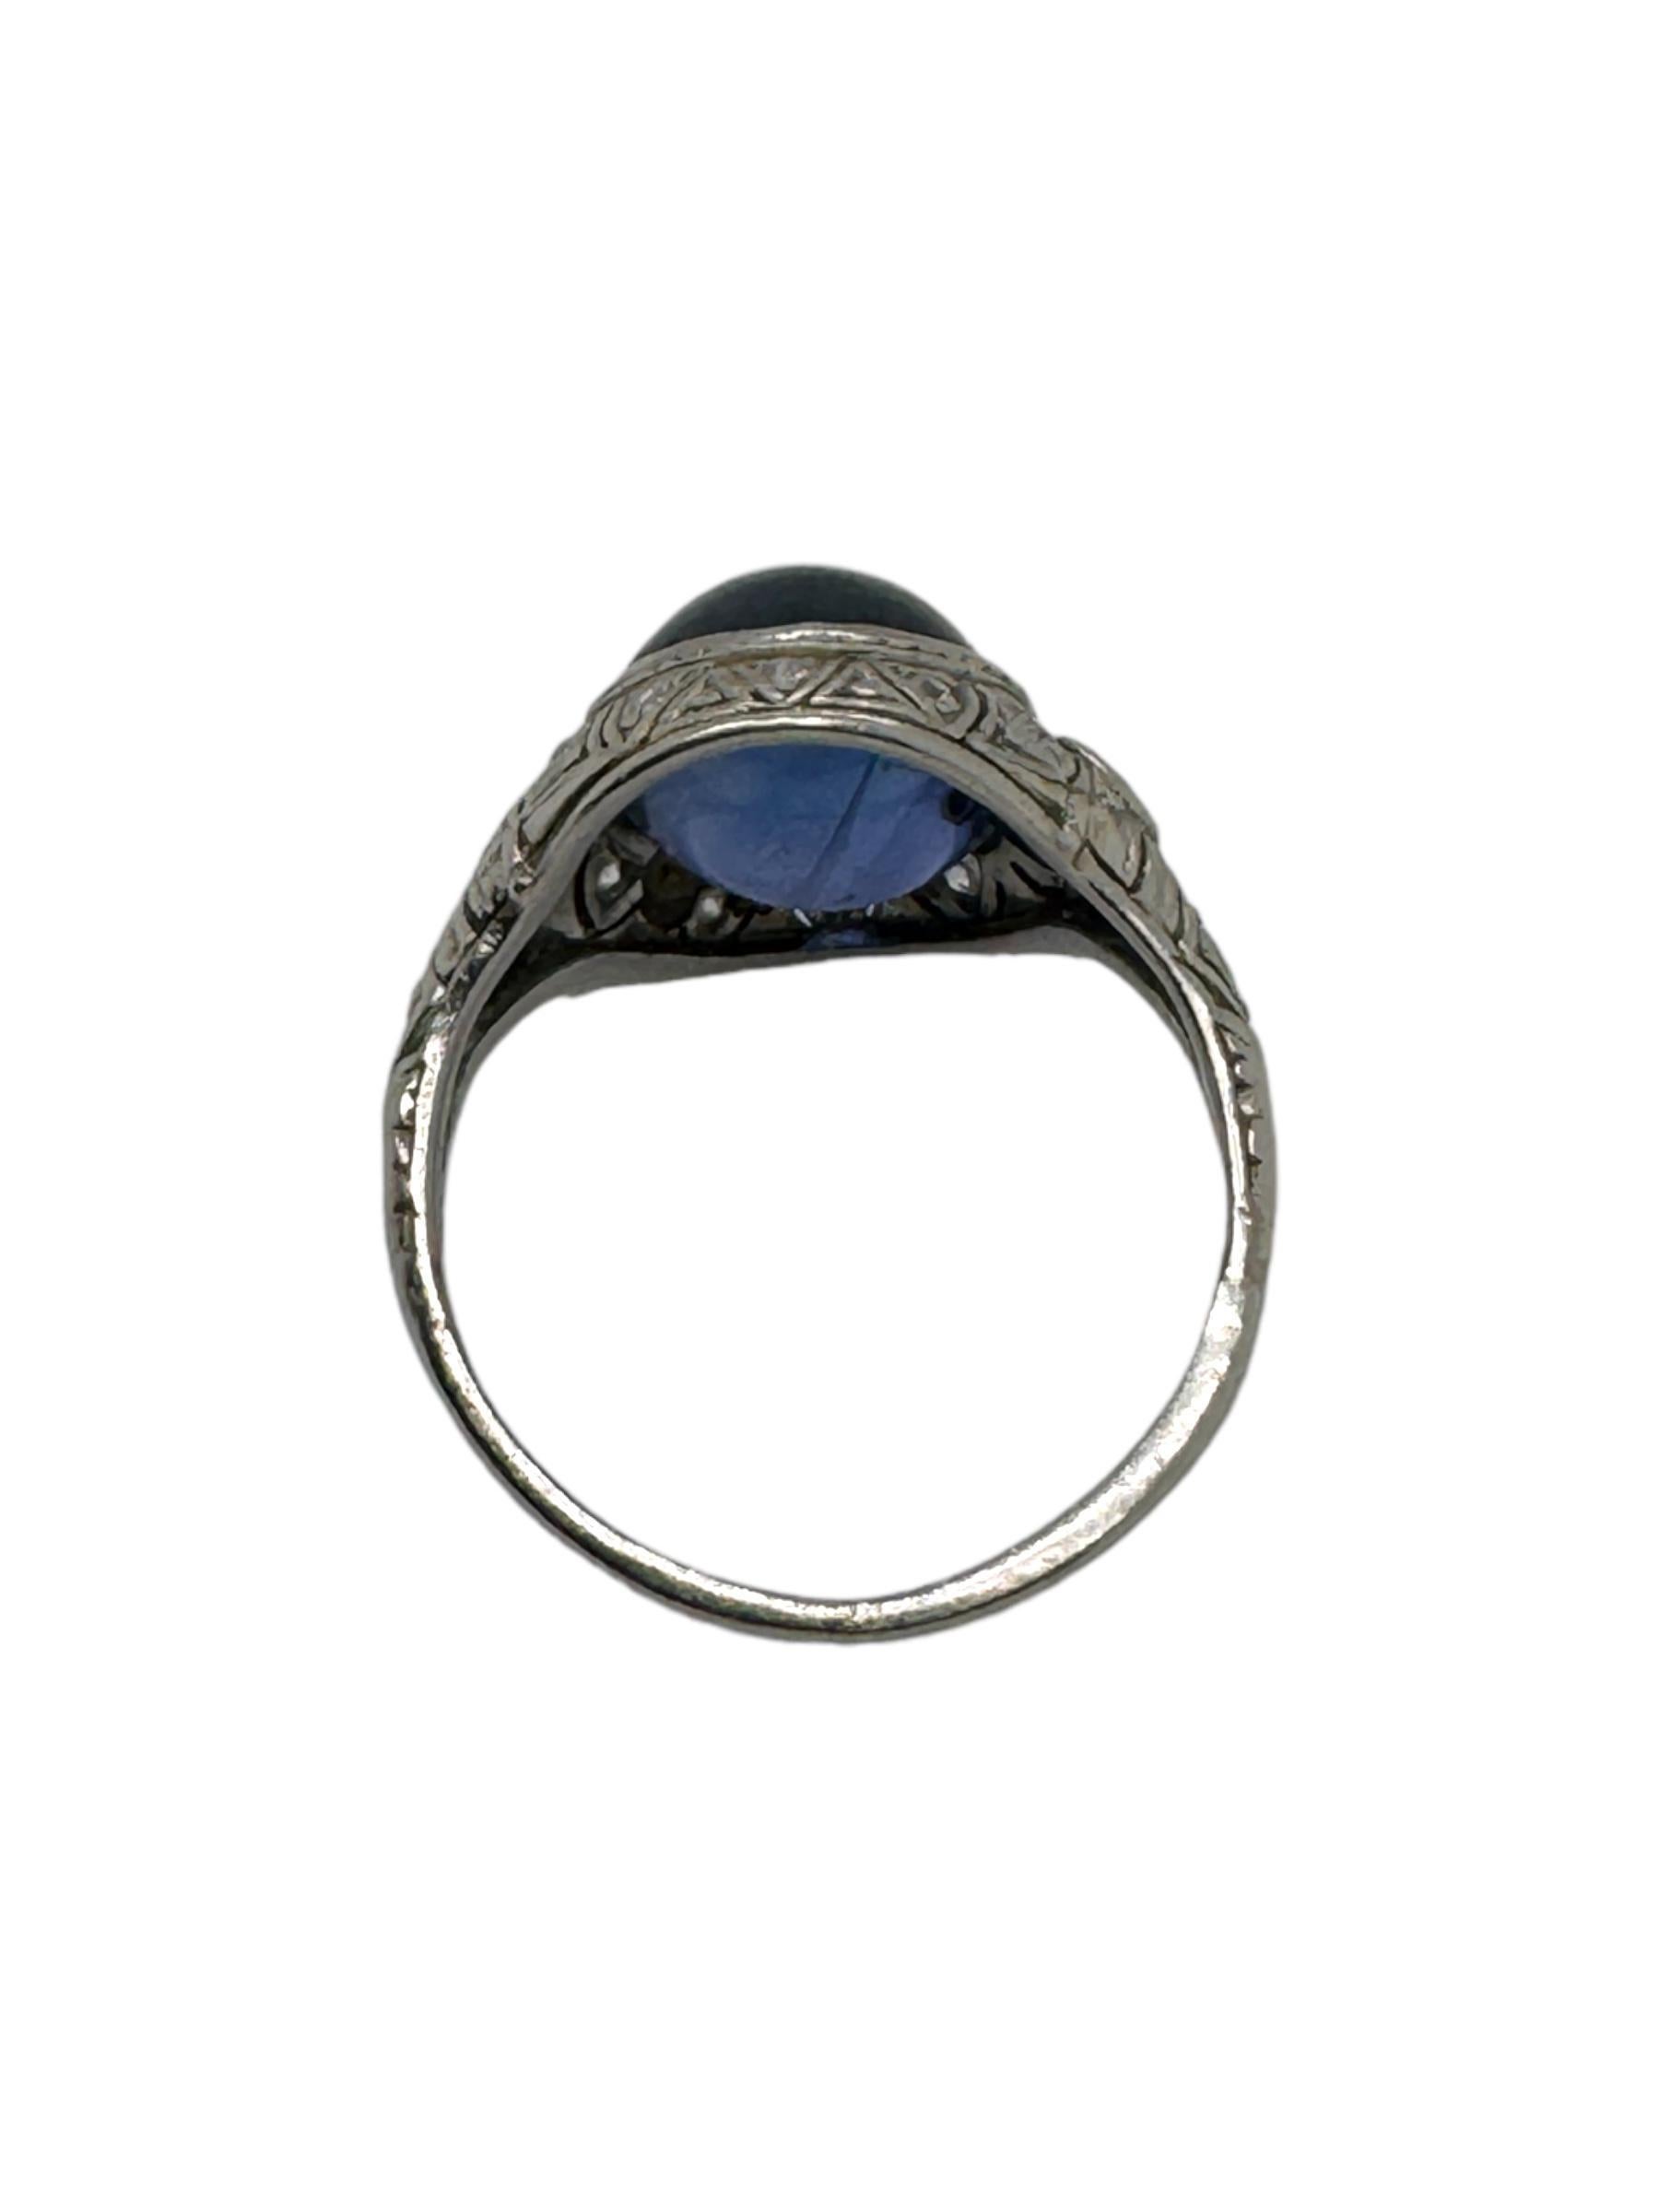 Women's Art Deco 7 Carat Color Change Sapphire & Diamond Ring For Sale